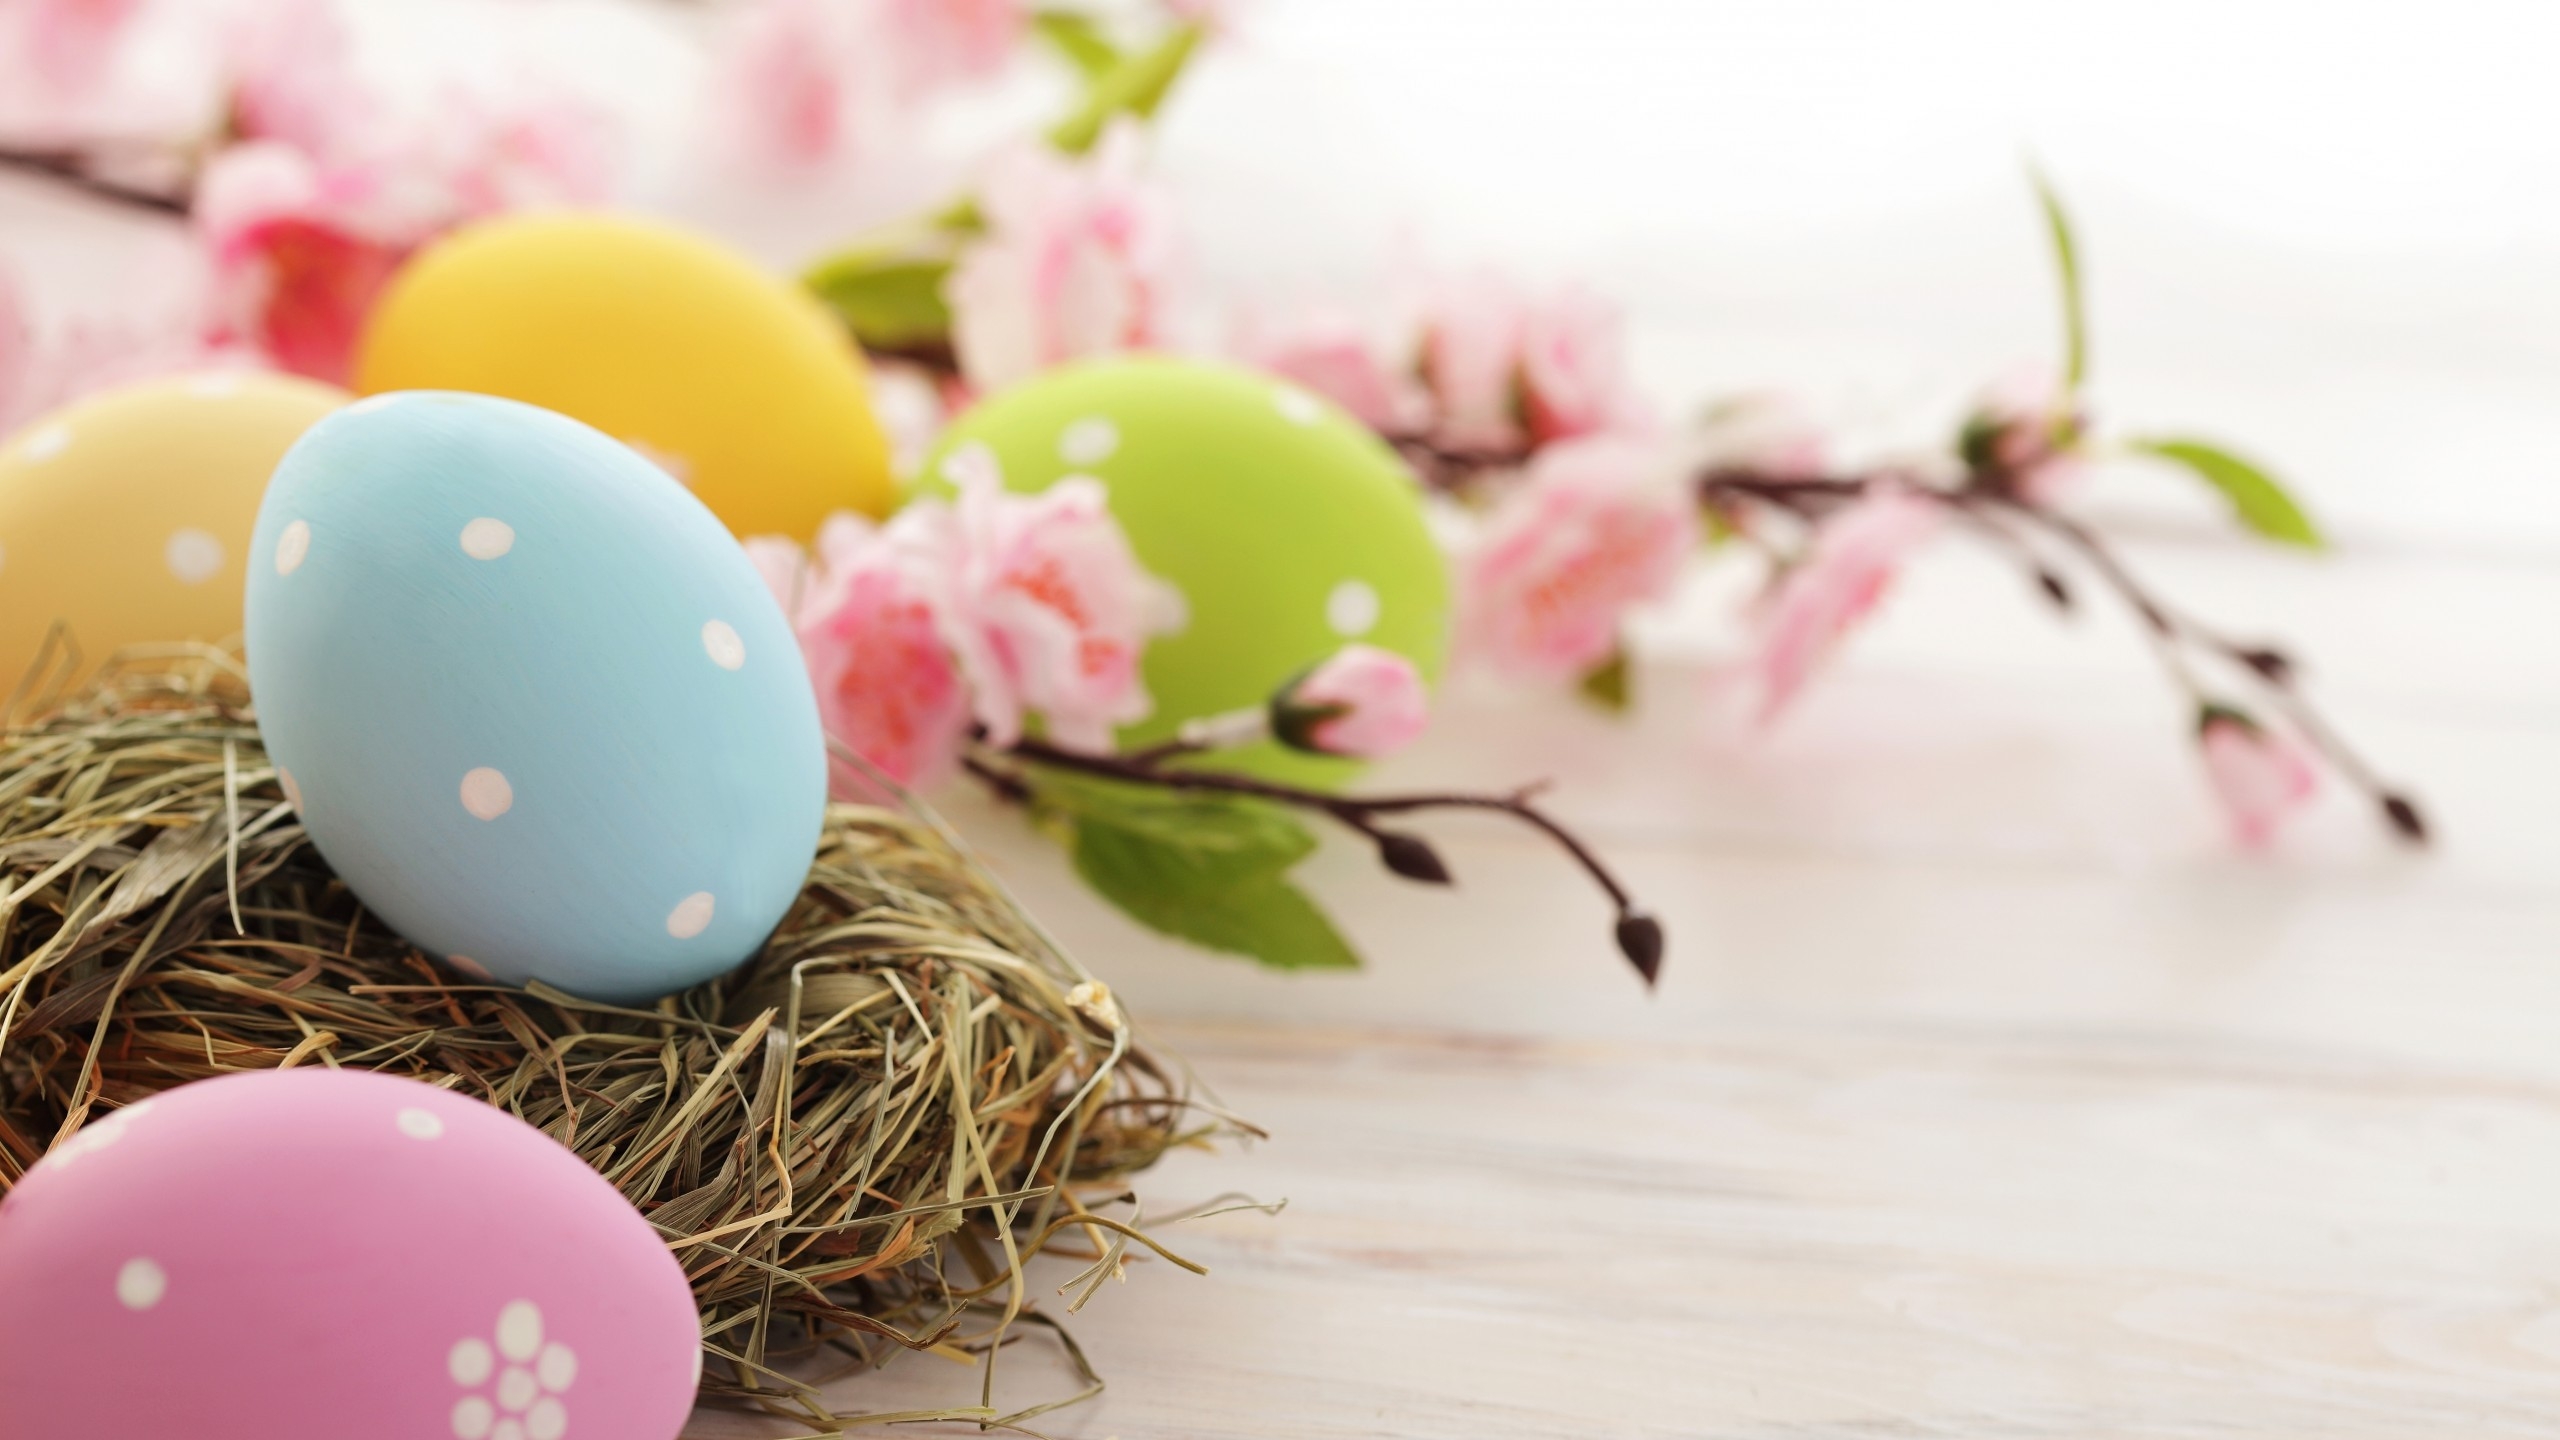 Easter Time Eggs for 2560x1440 HDTV resolution